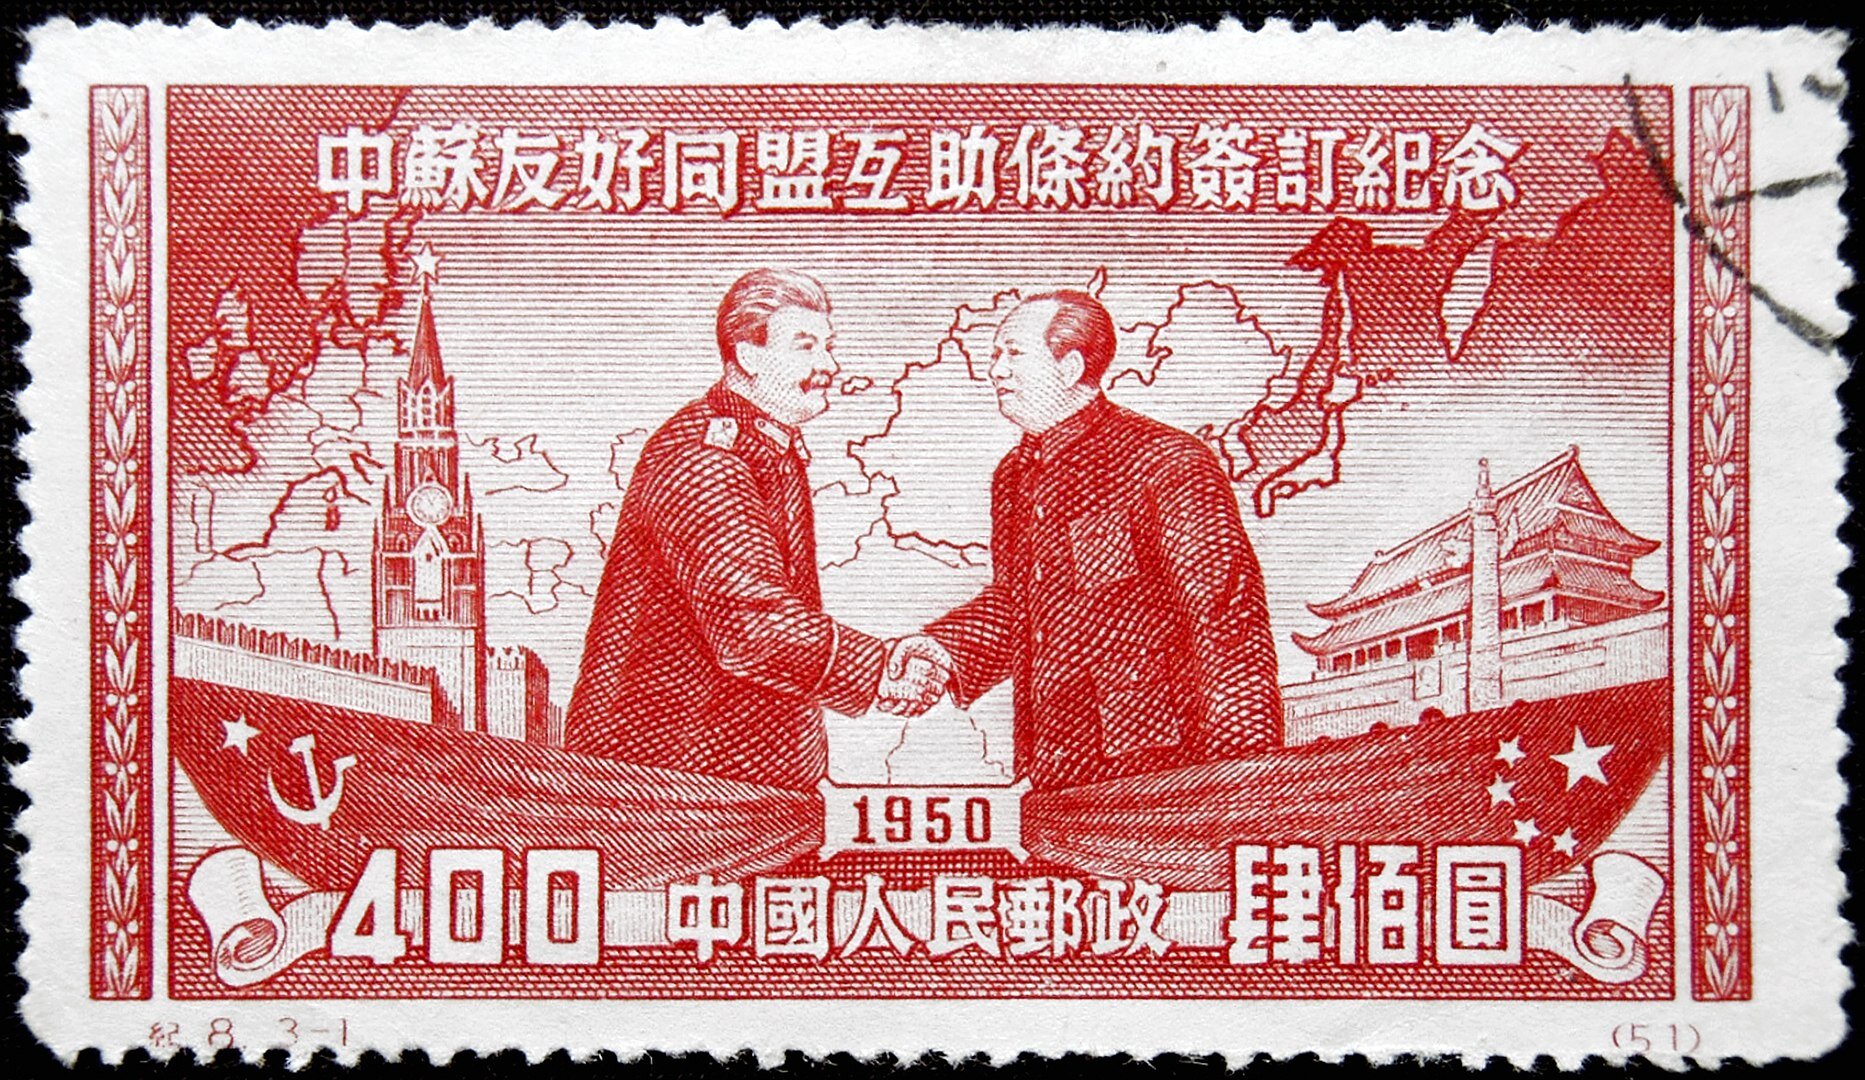 Ilustracja przedstawia znaczek pocztowy, na którym widać dwóch przywódców Mao Zedonga i Józefa Stalina podających sobie ręce. Mężczyźni stoją na dwóch łodziach. Jedna jest ze znakiem Chin, druga ze znakiem Związku Sowieckiego. Na górze jest napis w języku chińskim, na dole rok tysiąc dziewięćset pięćdziesiąty.